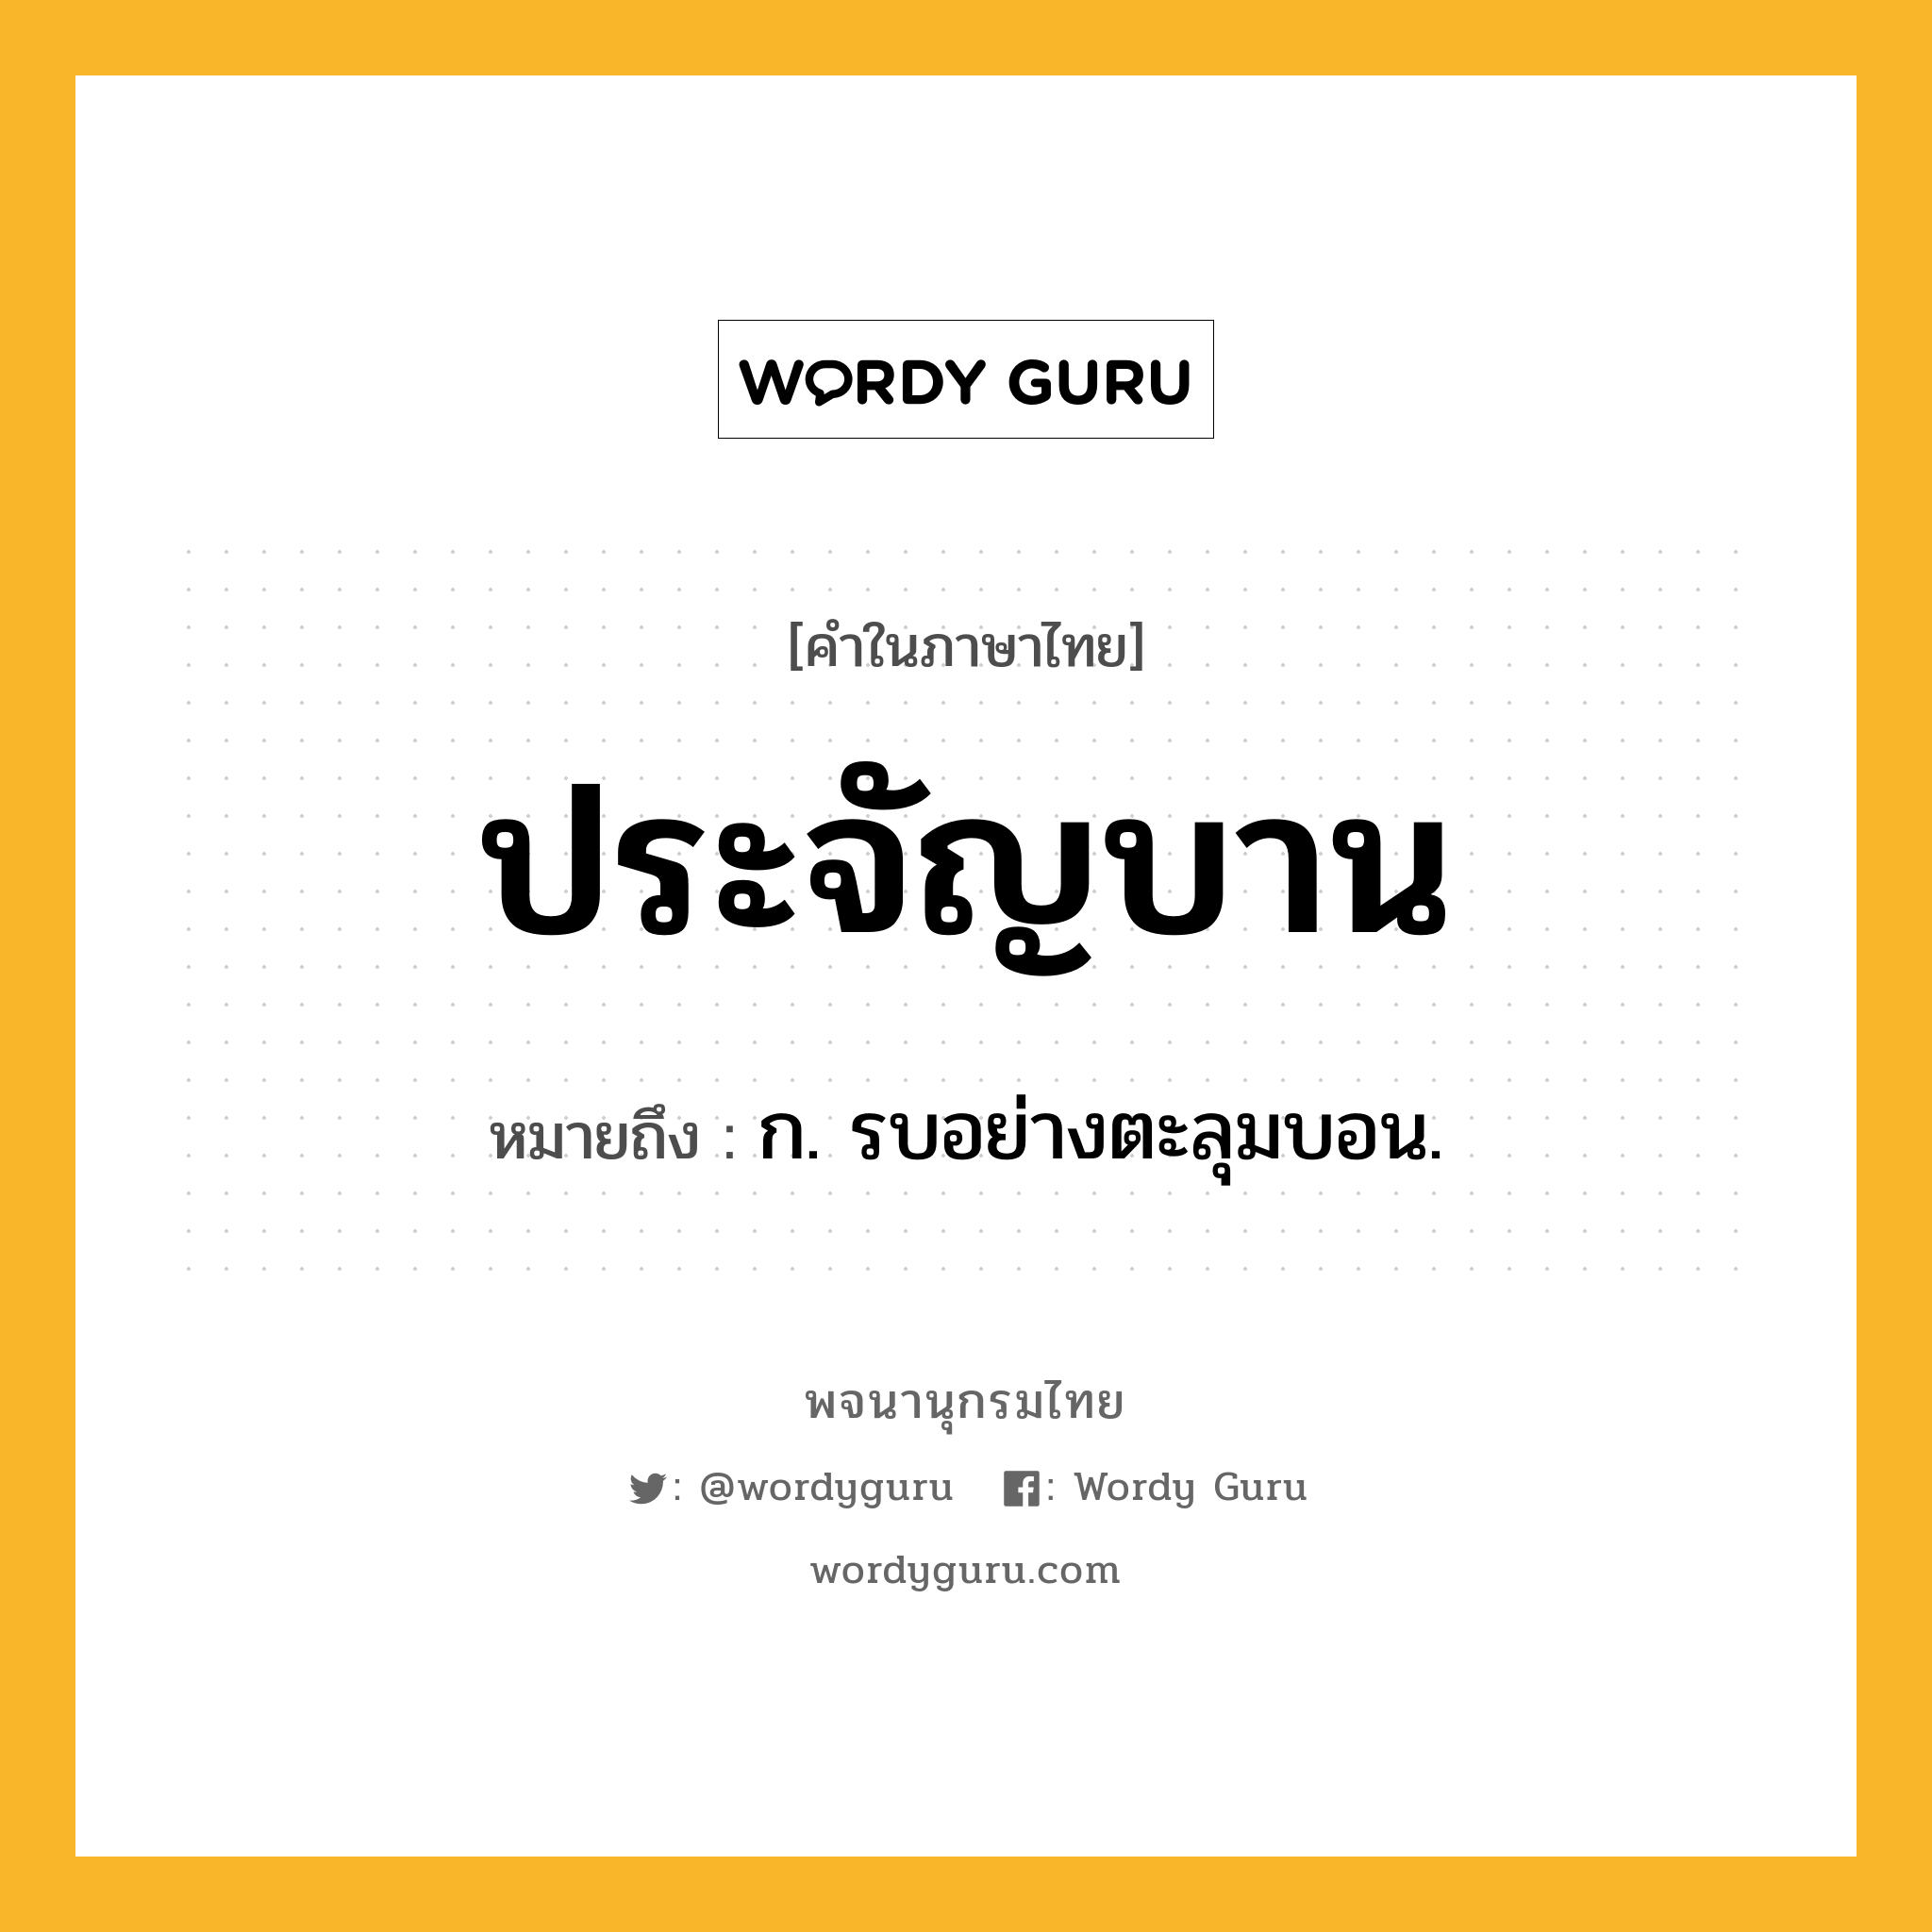 ประจัญบาน หมายถึงอะไร?, คำในภาษาไทย ประจัญบาน หมายถึง ก. รบอย่างตะลุมบอน.